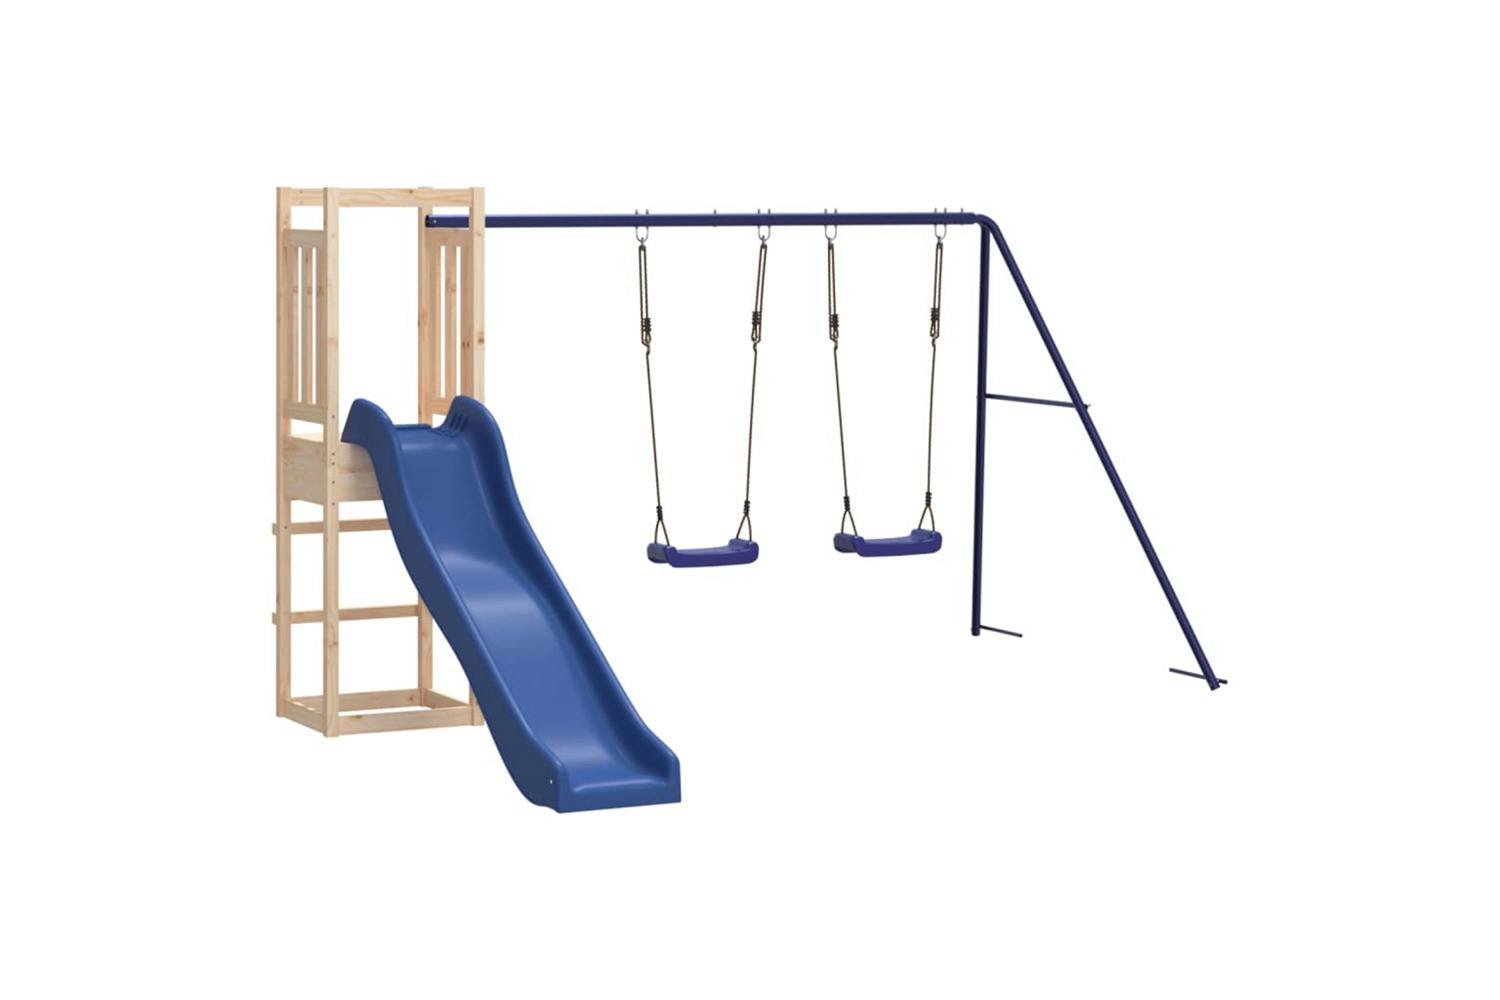 Vidaxl 3155957 Playhouse With Slide Swings Solid Wood Pine